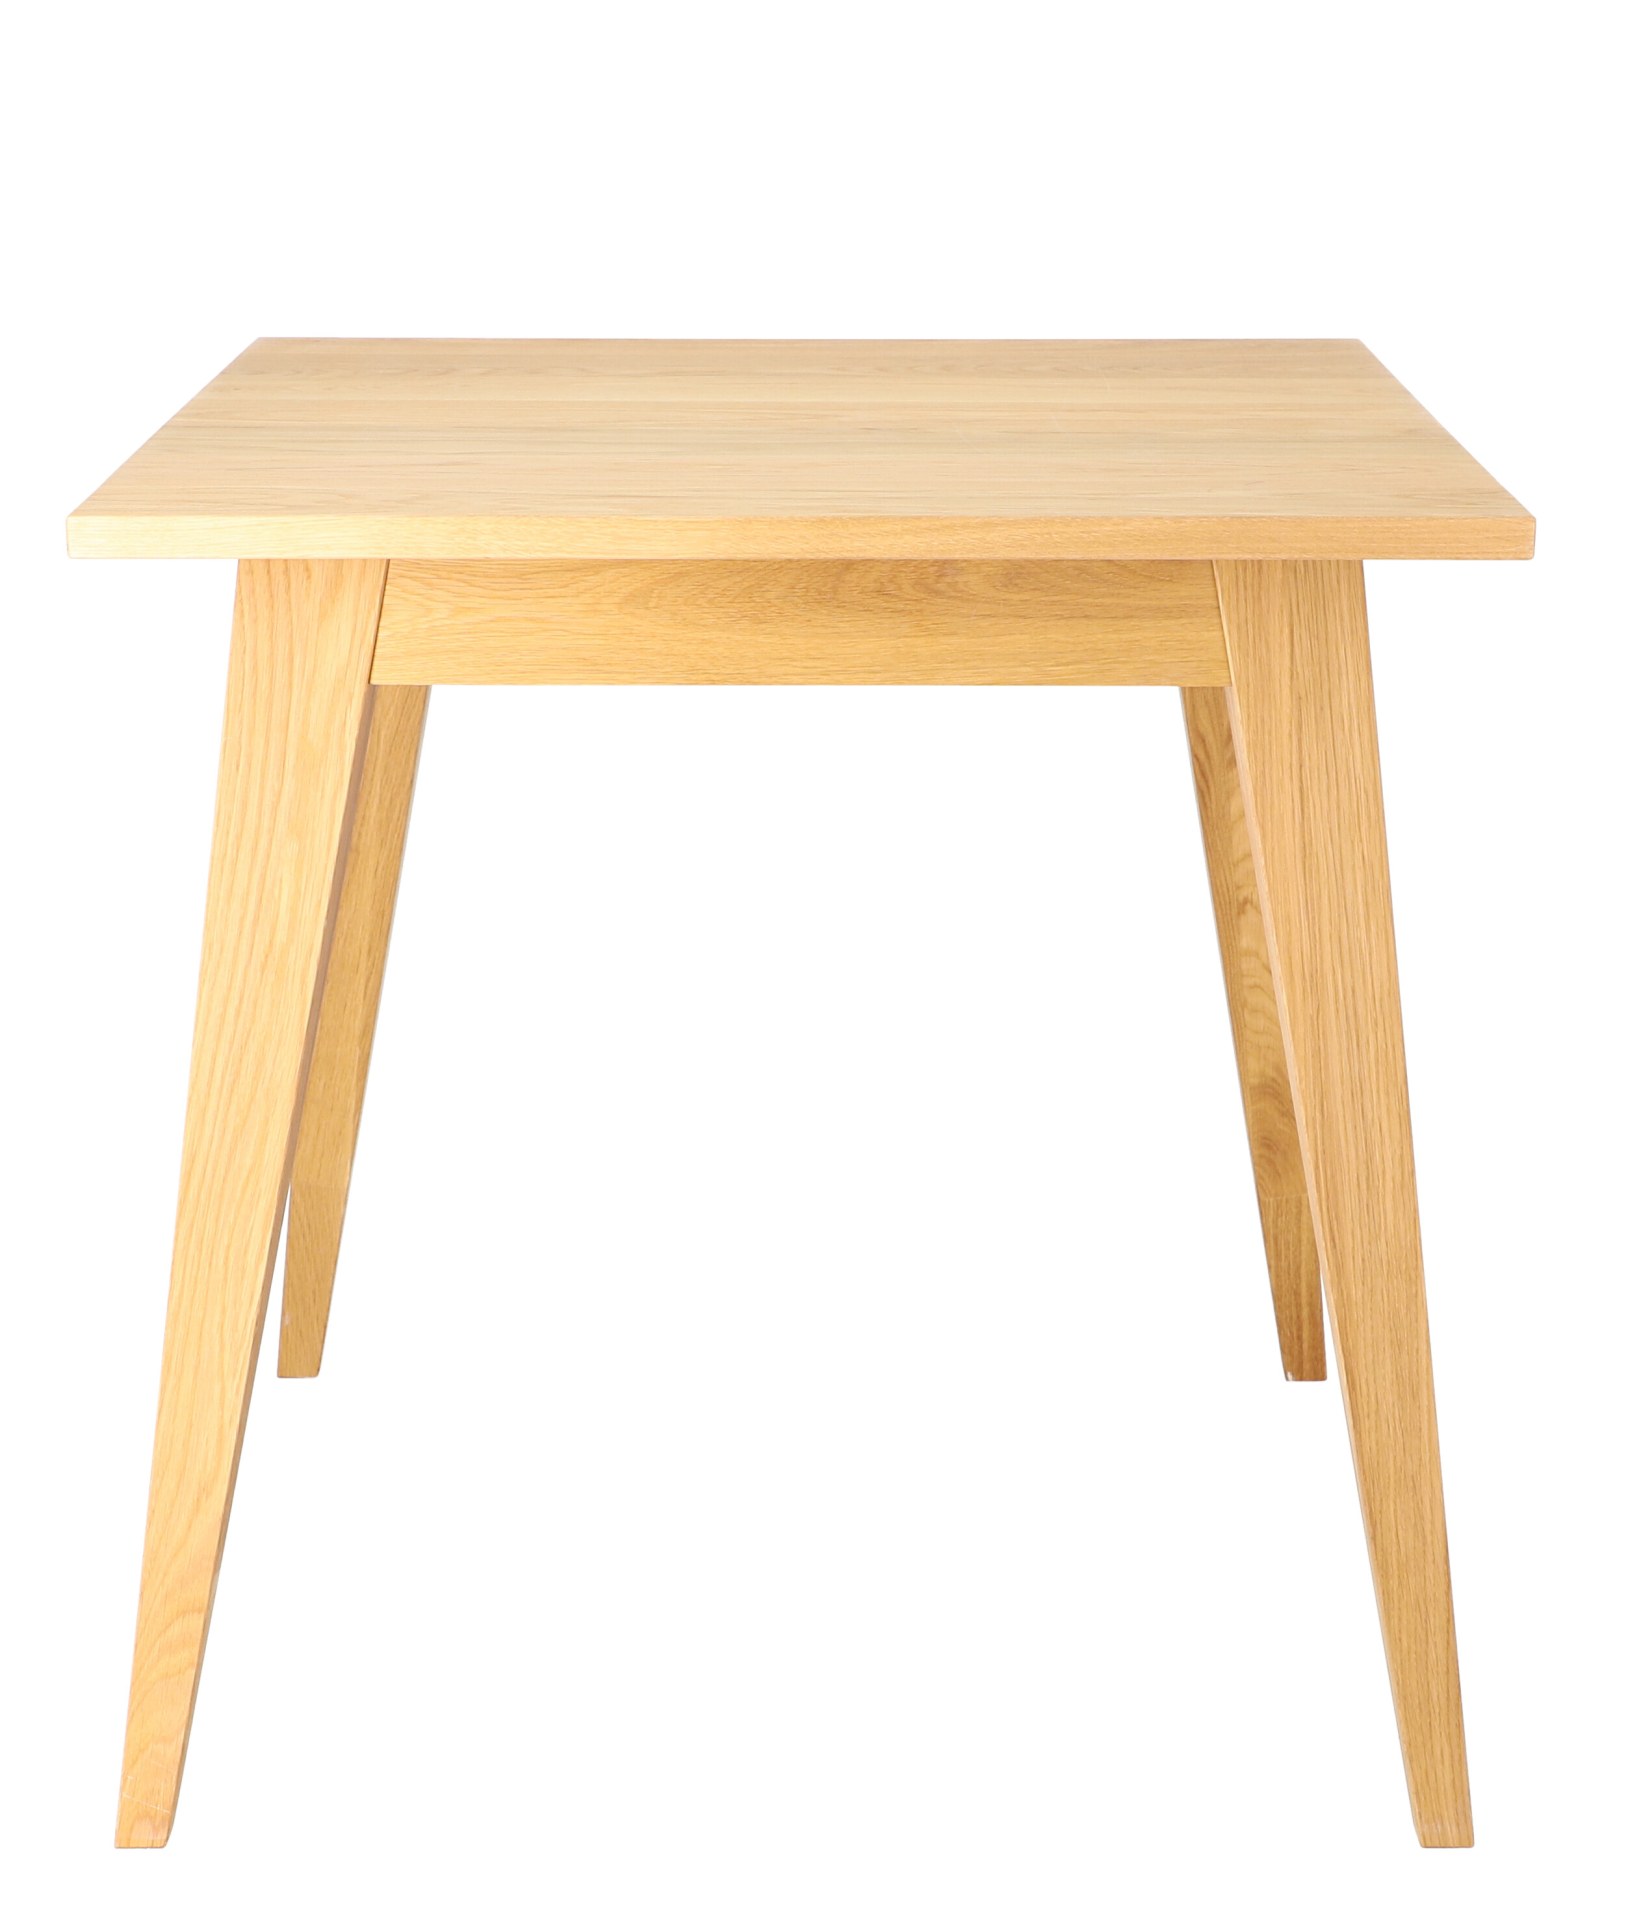 Der Esstisch Xaver hat ein schlichtes und zeitloses Auftreten. Hergestellt wurde der Tisch von der Marke Jan Kurtz. Gefertigt wurde er aus Massiver Eiche und Echtholzfurnier. Die Tischplatte hat eine Länge von 75 cm.